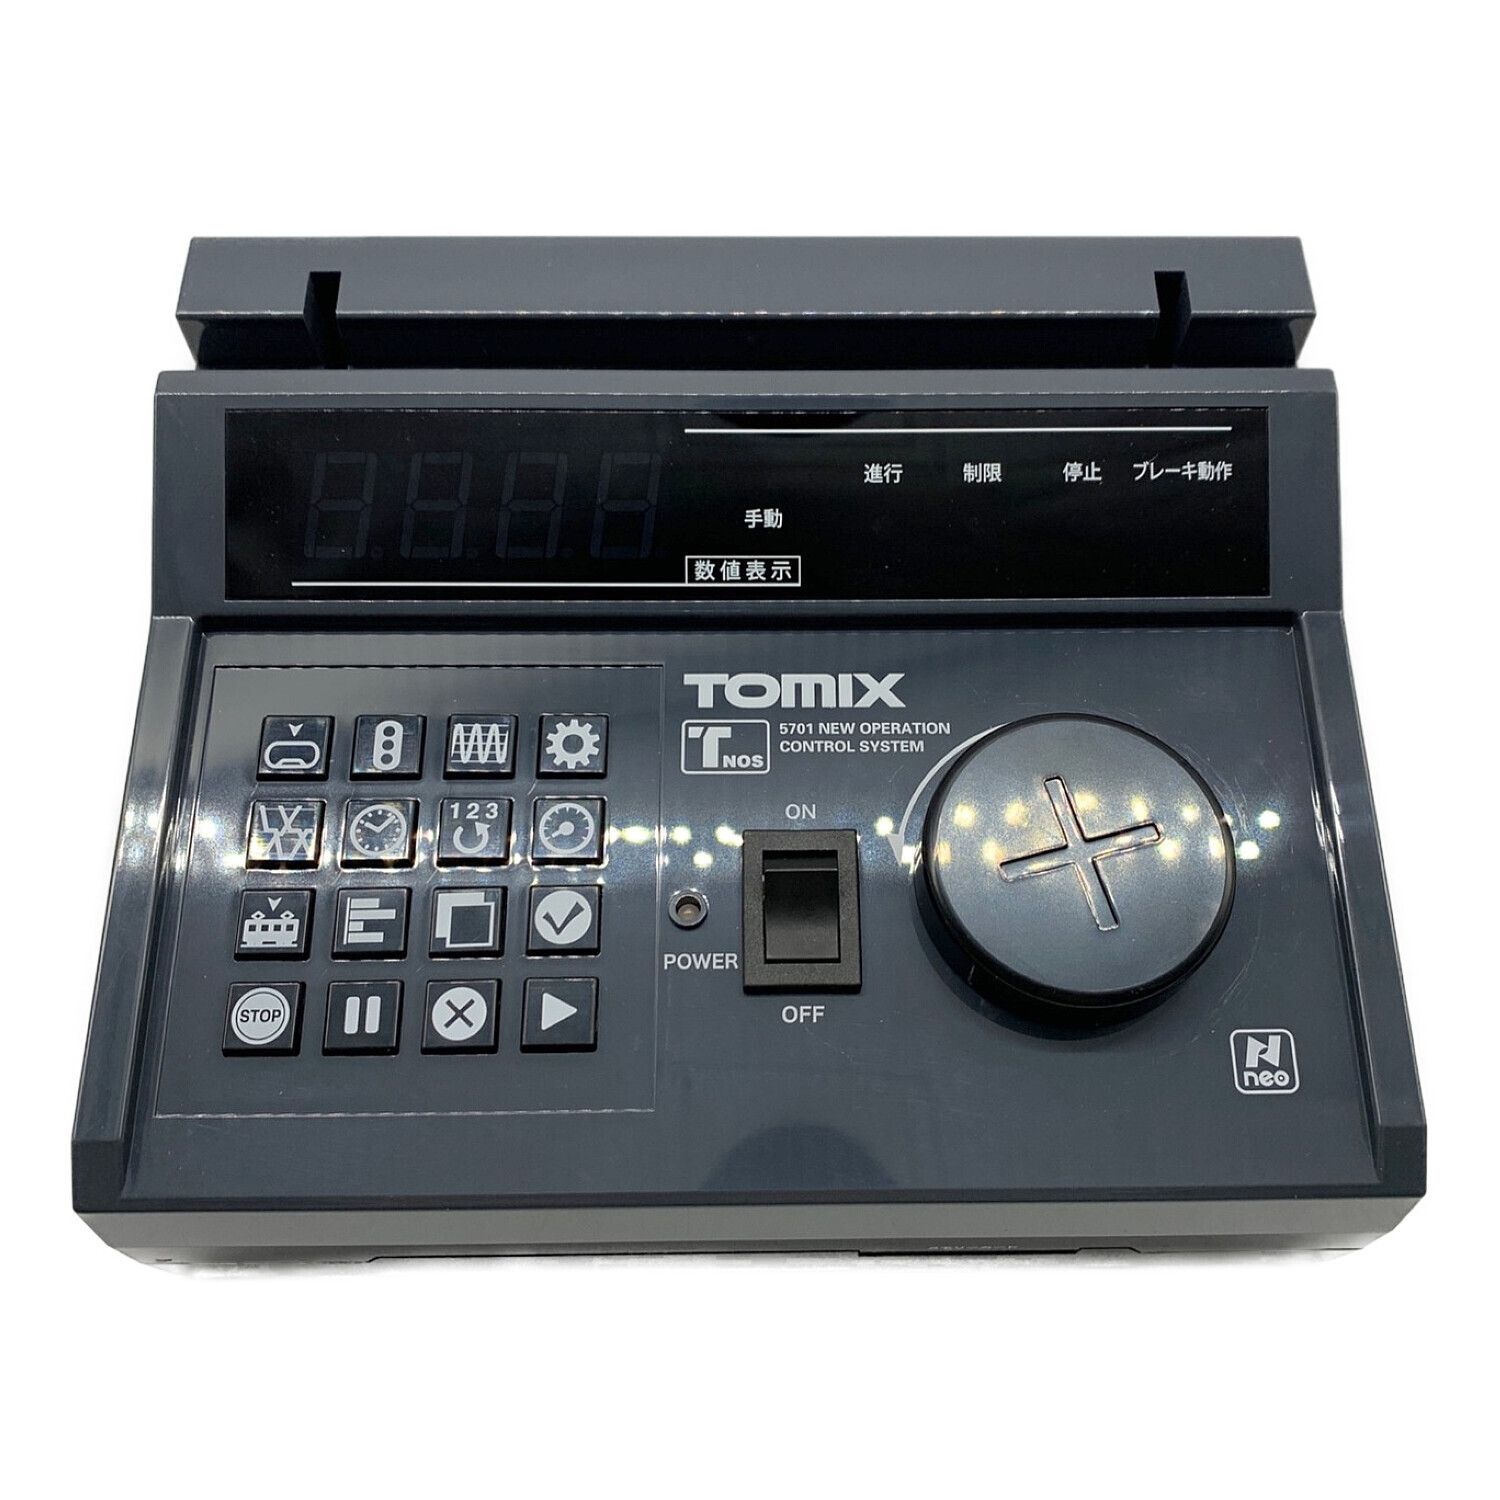 TOMIX (トミックス) Nゲージ 5701 TNOS新制御システム基本セット 